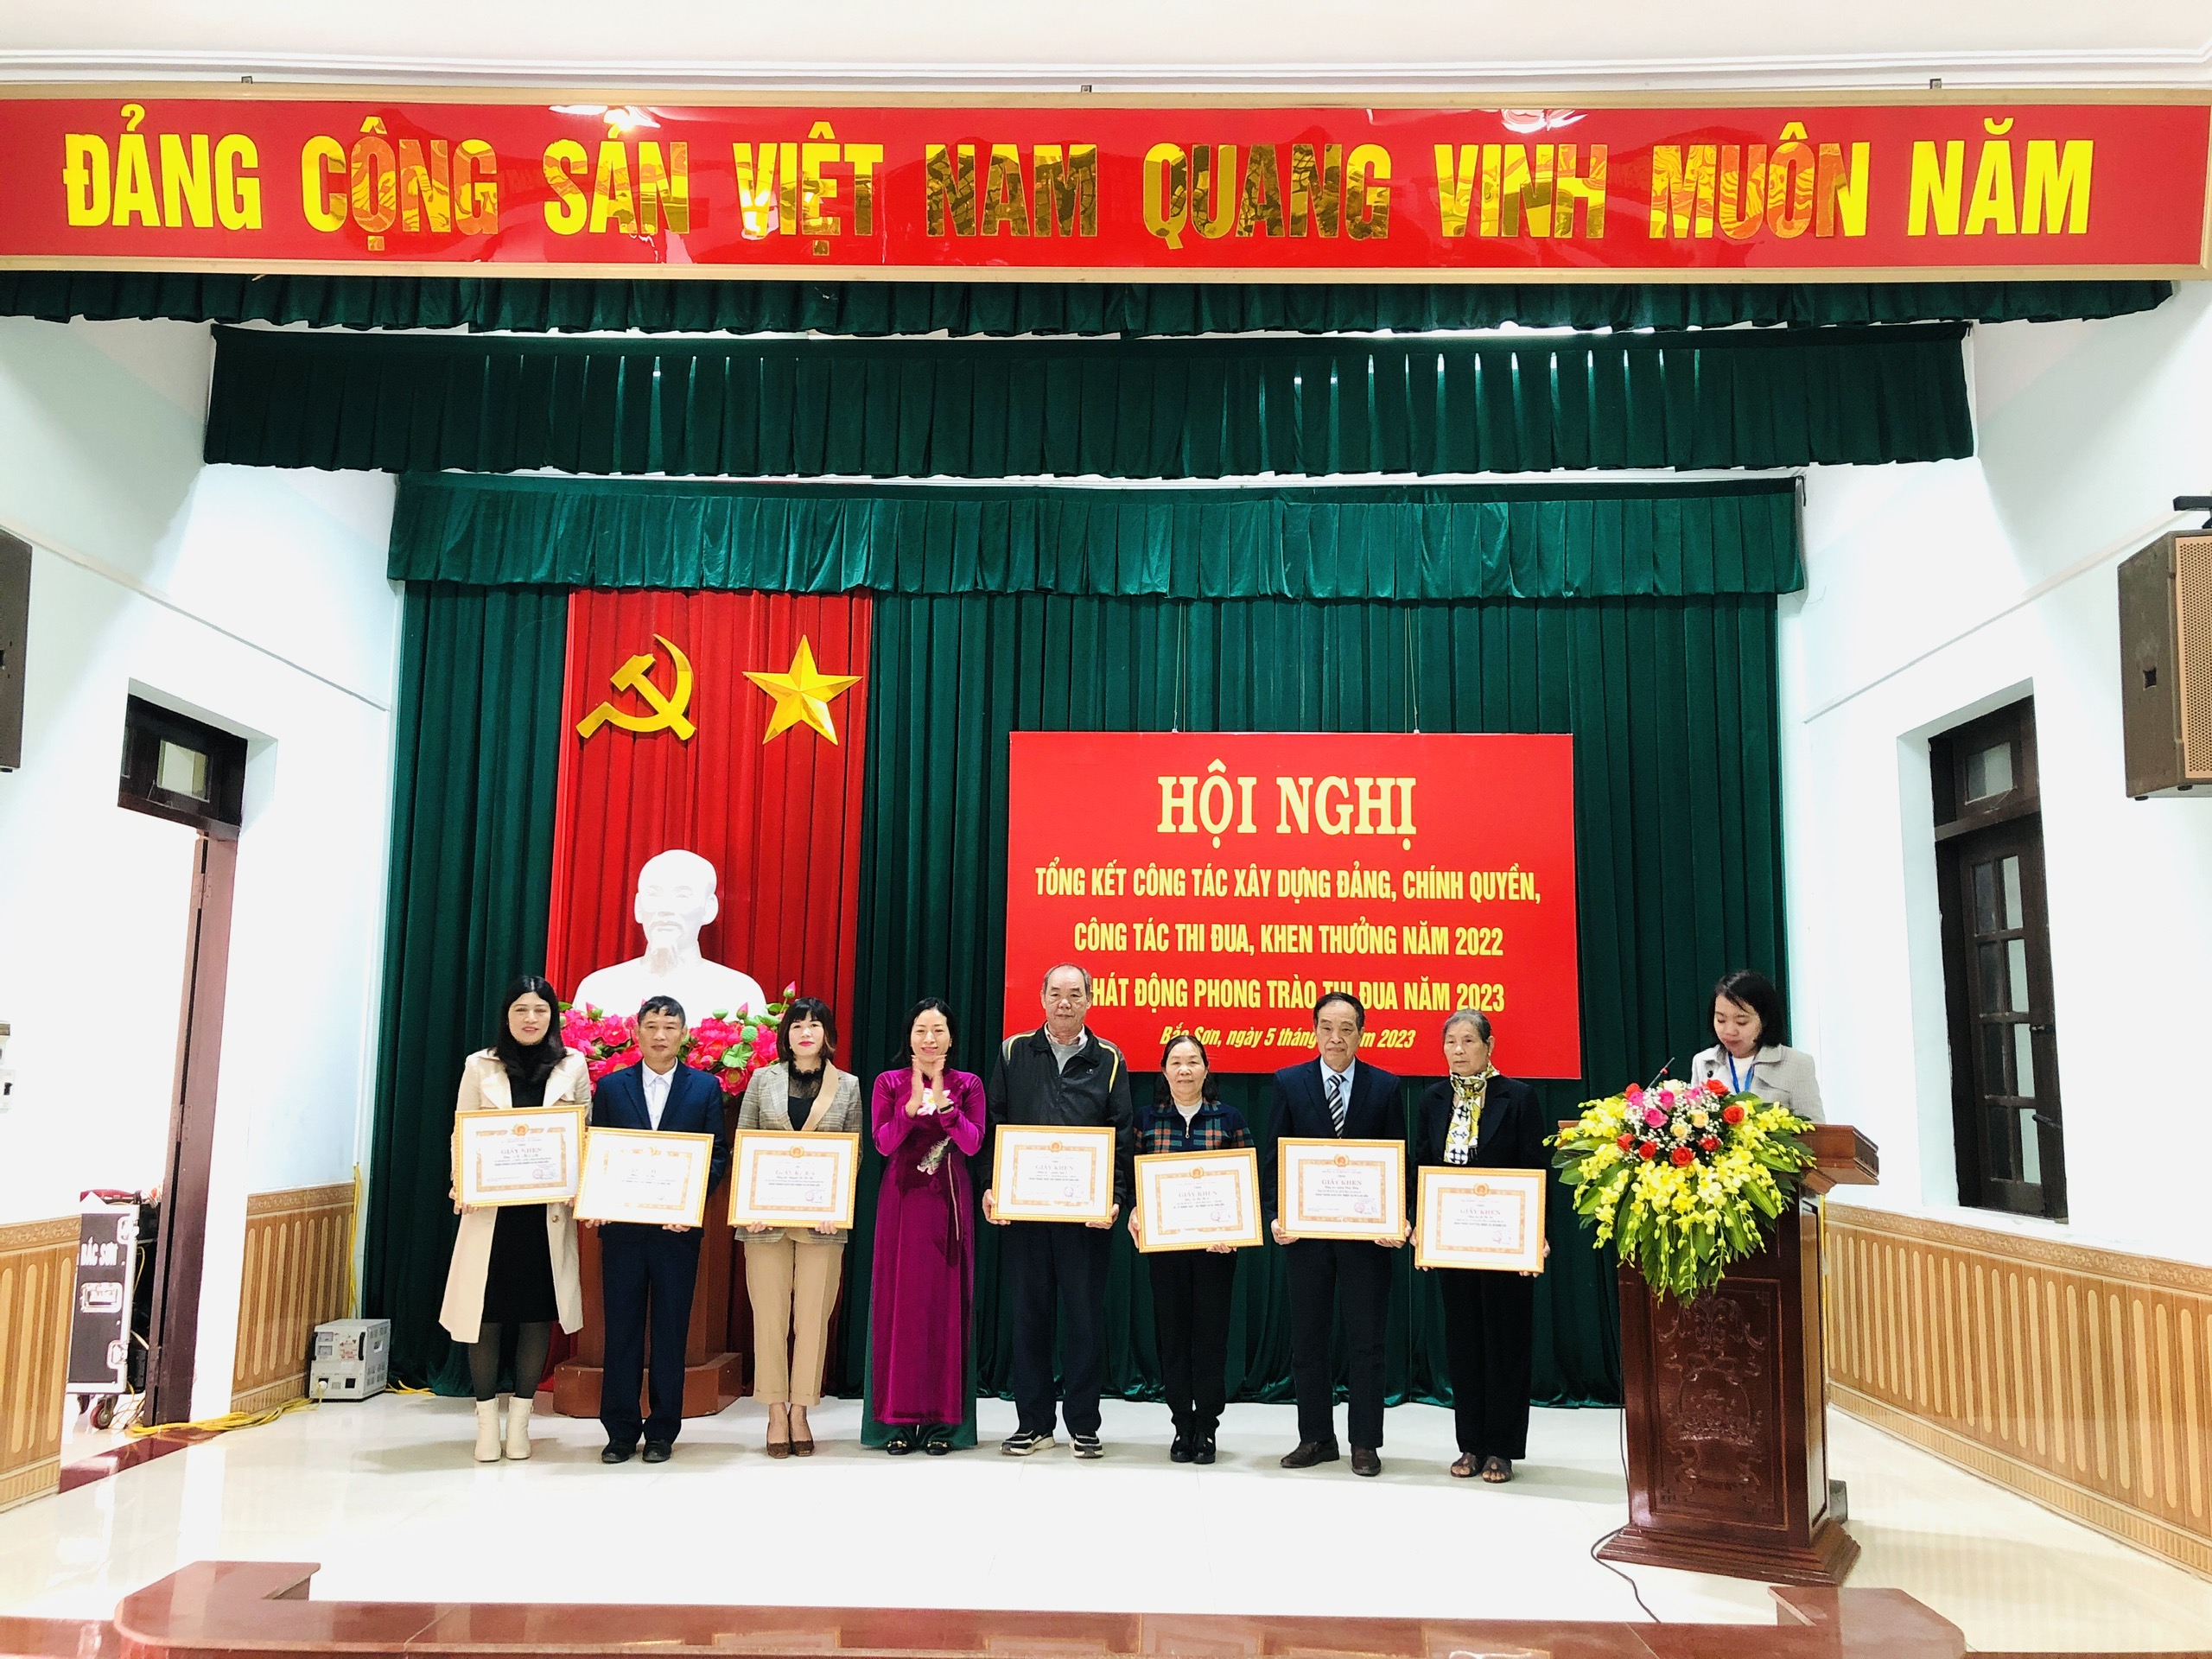 Đảng uỷ phường Bắc Sơn tổ chức Hội nghị tổng kết công tác xây dựng Đảng, xây dựng chính quyền năm 2022 và phát động phong trào thi đua năm 2023